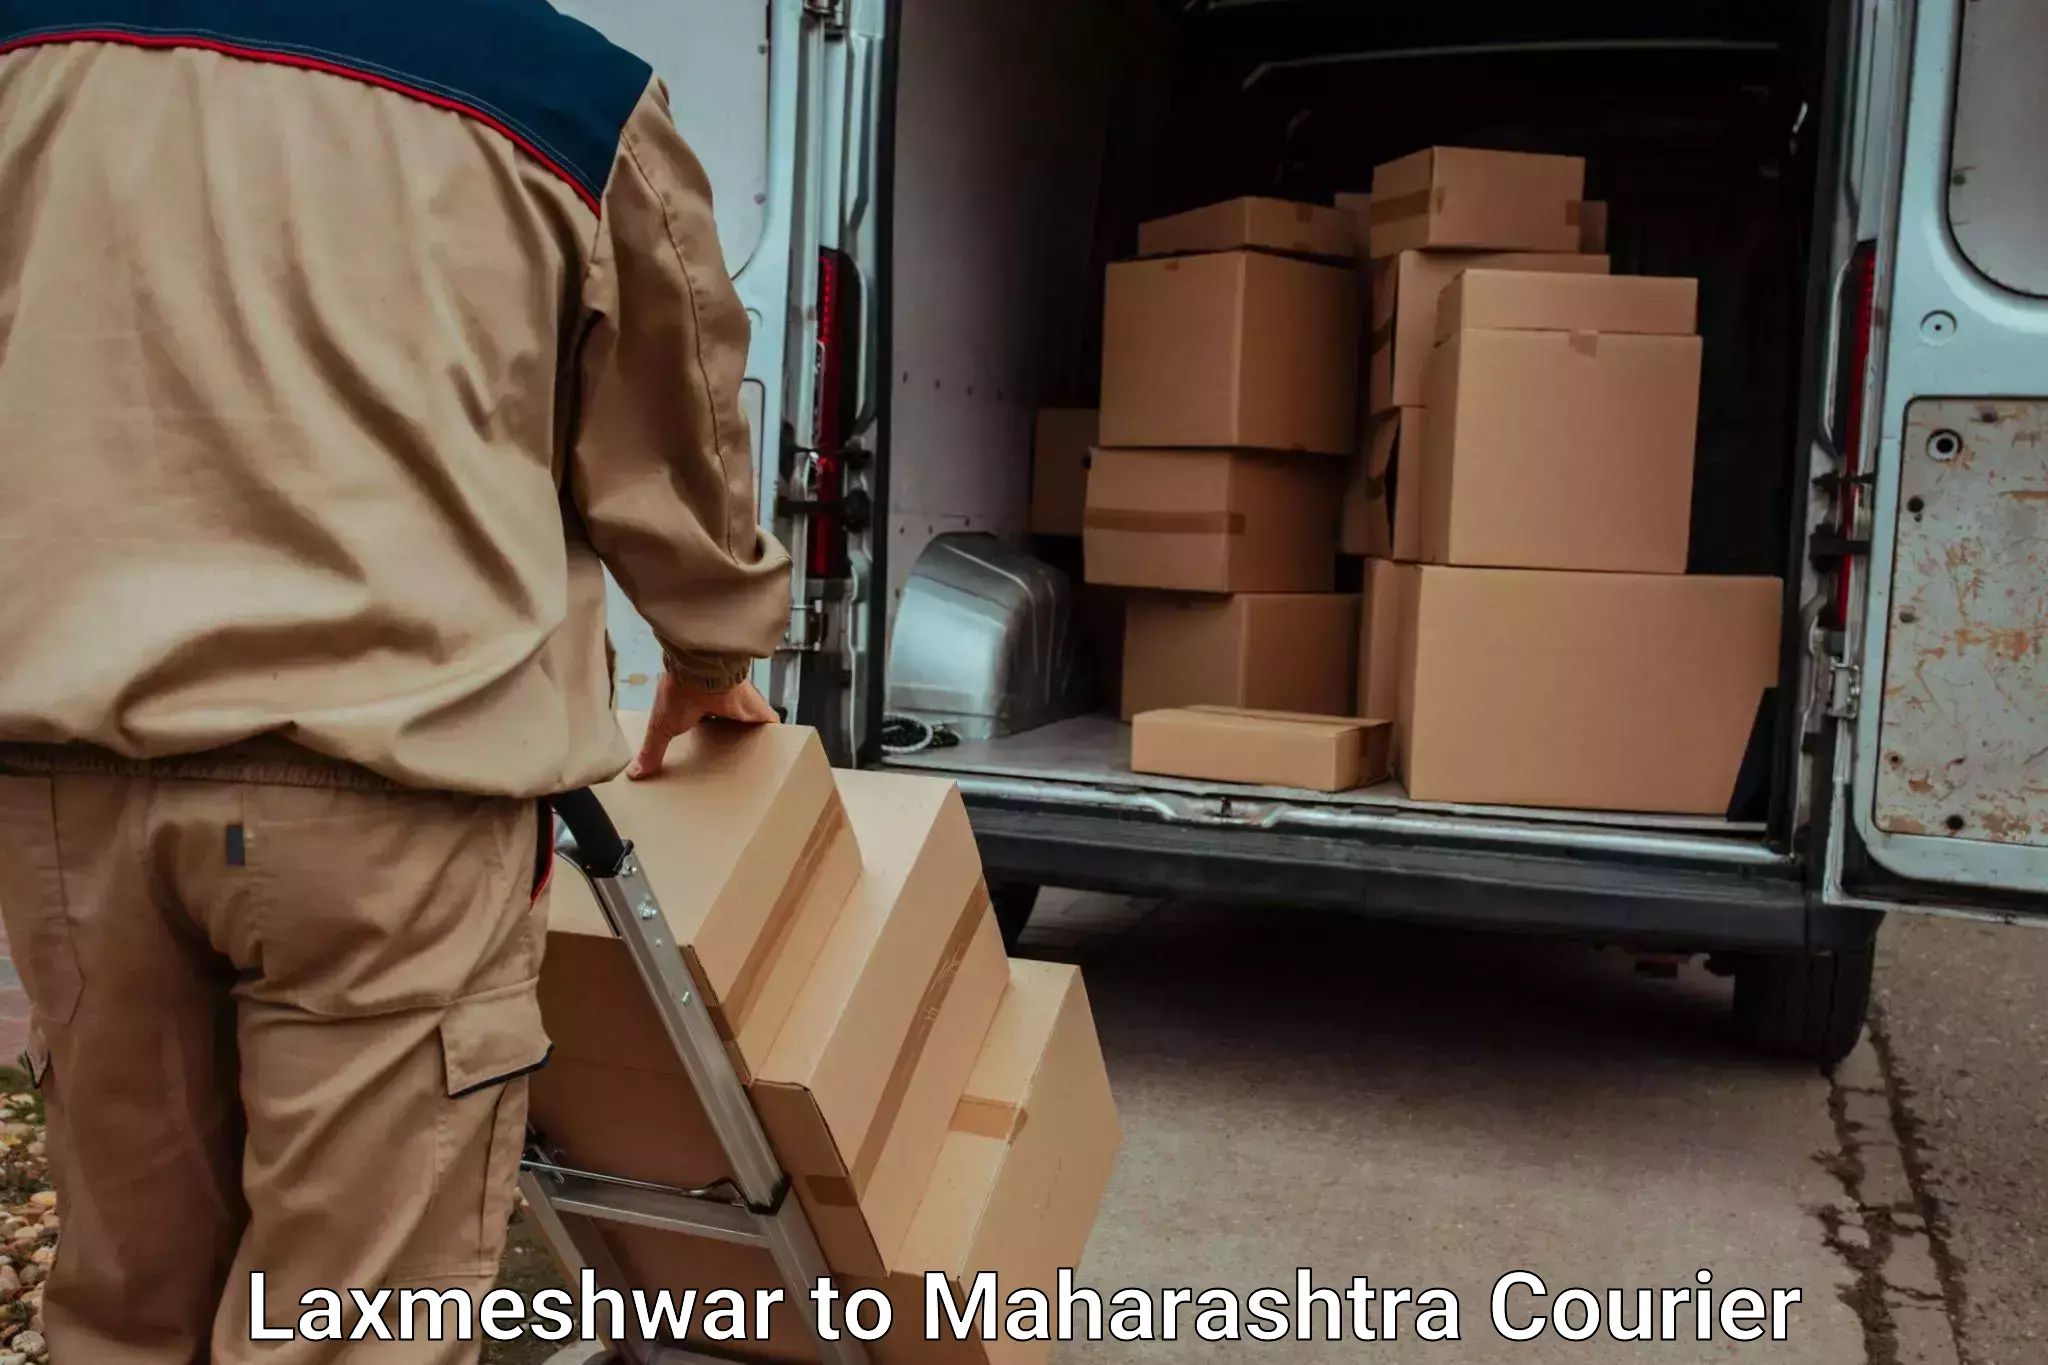 Furniture transport service Laxmeshwar to Maharashtra